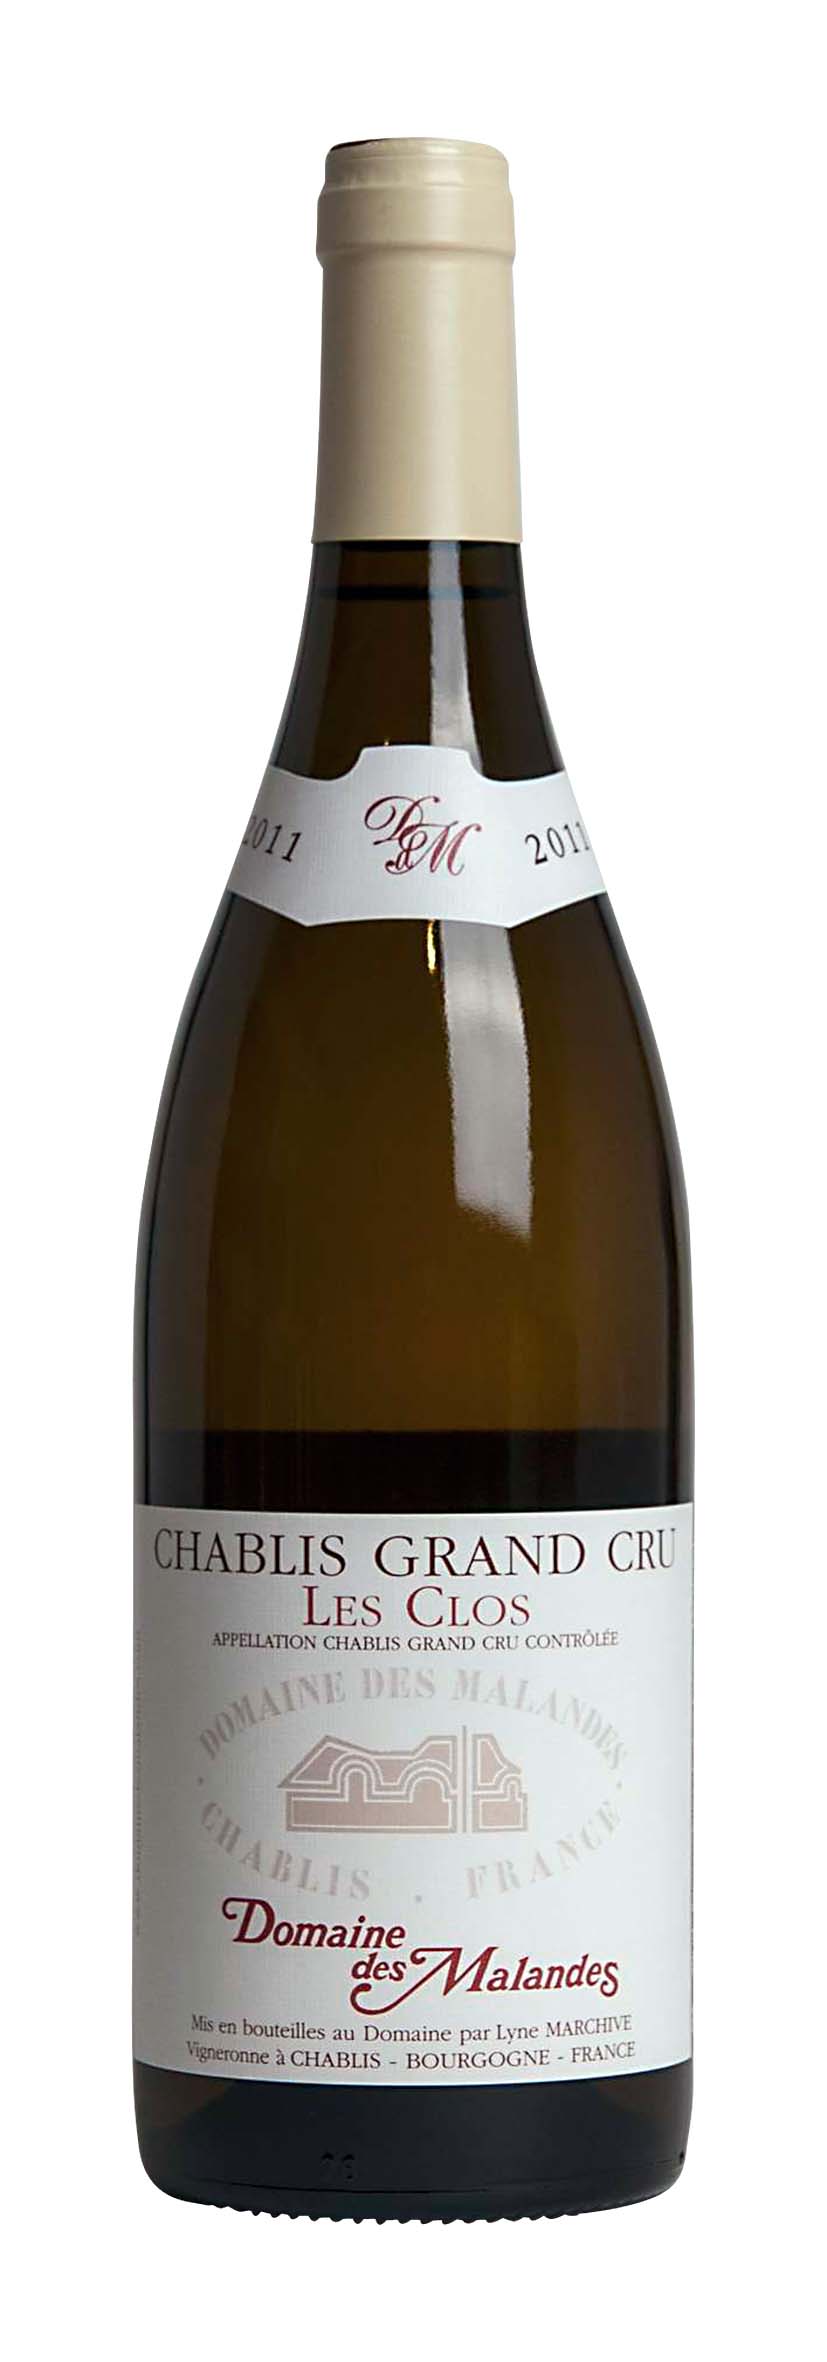 Chablis Grand Cru AOC Les Clos 2011